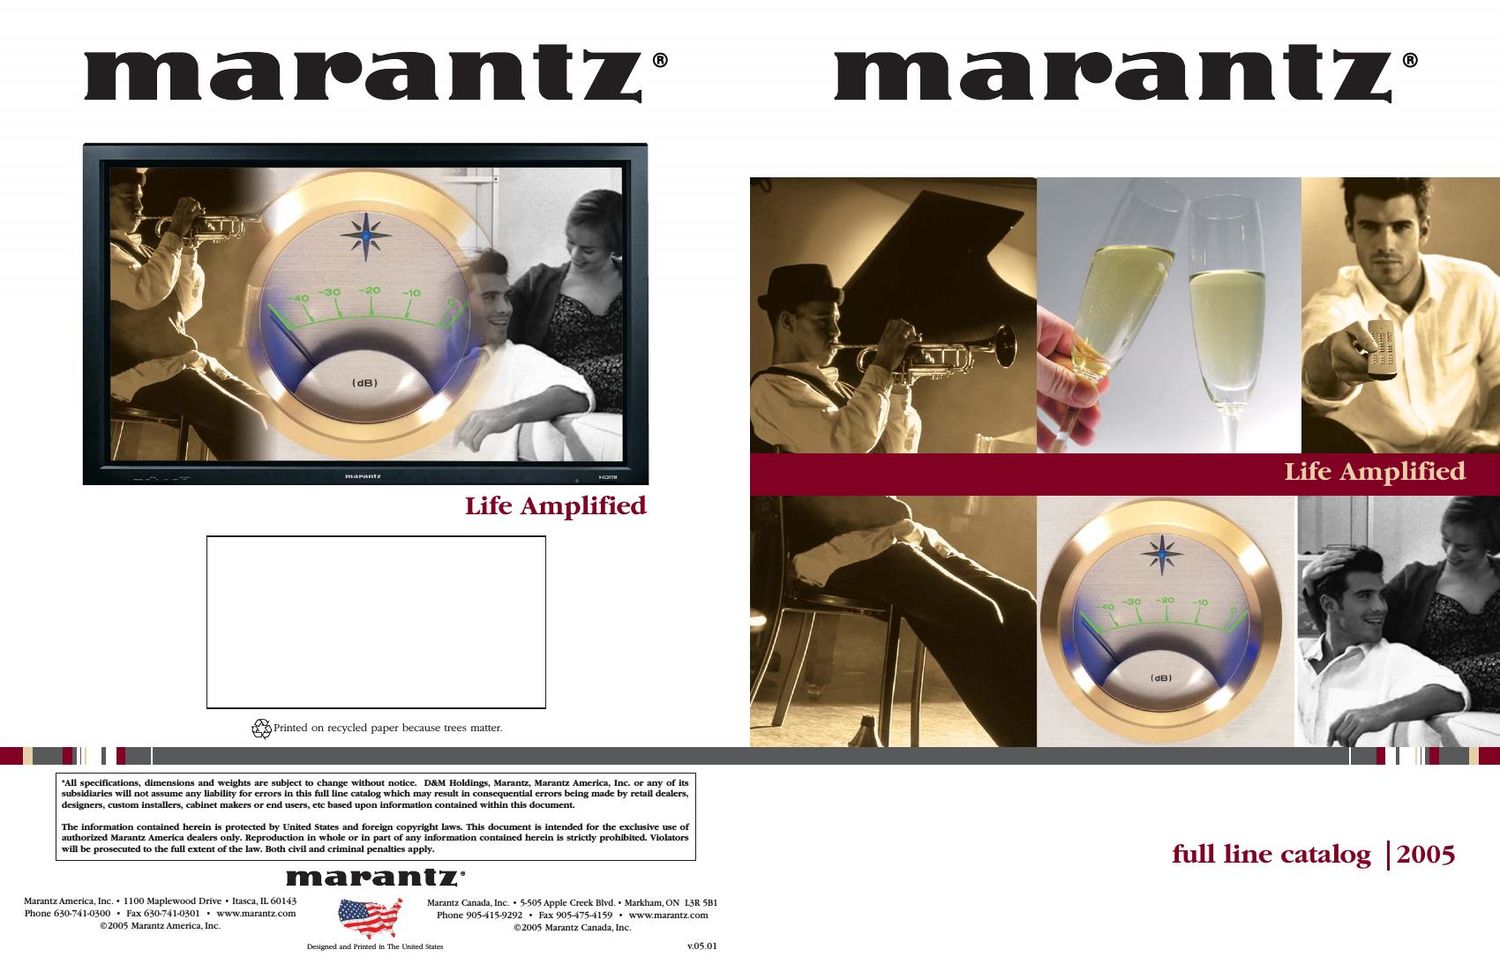 Marantz Catalogue Full Line Catalog 2005